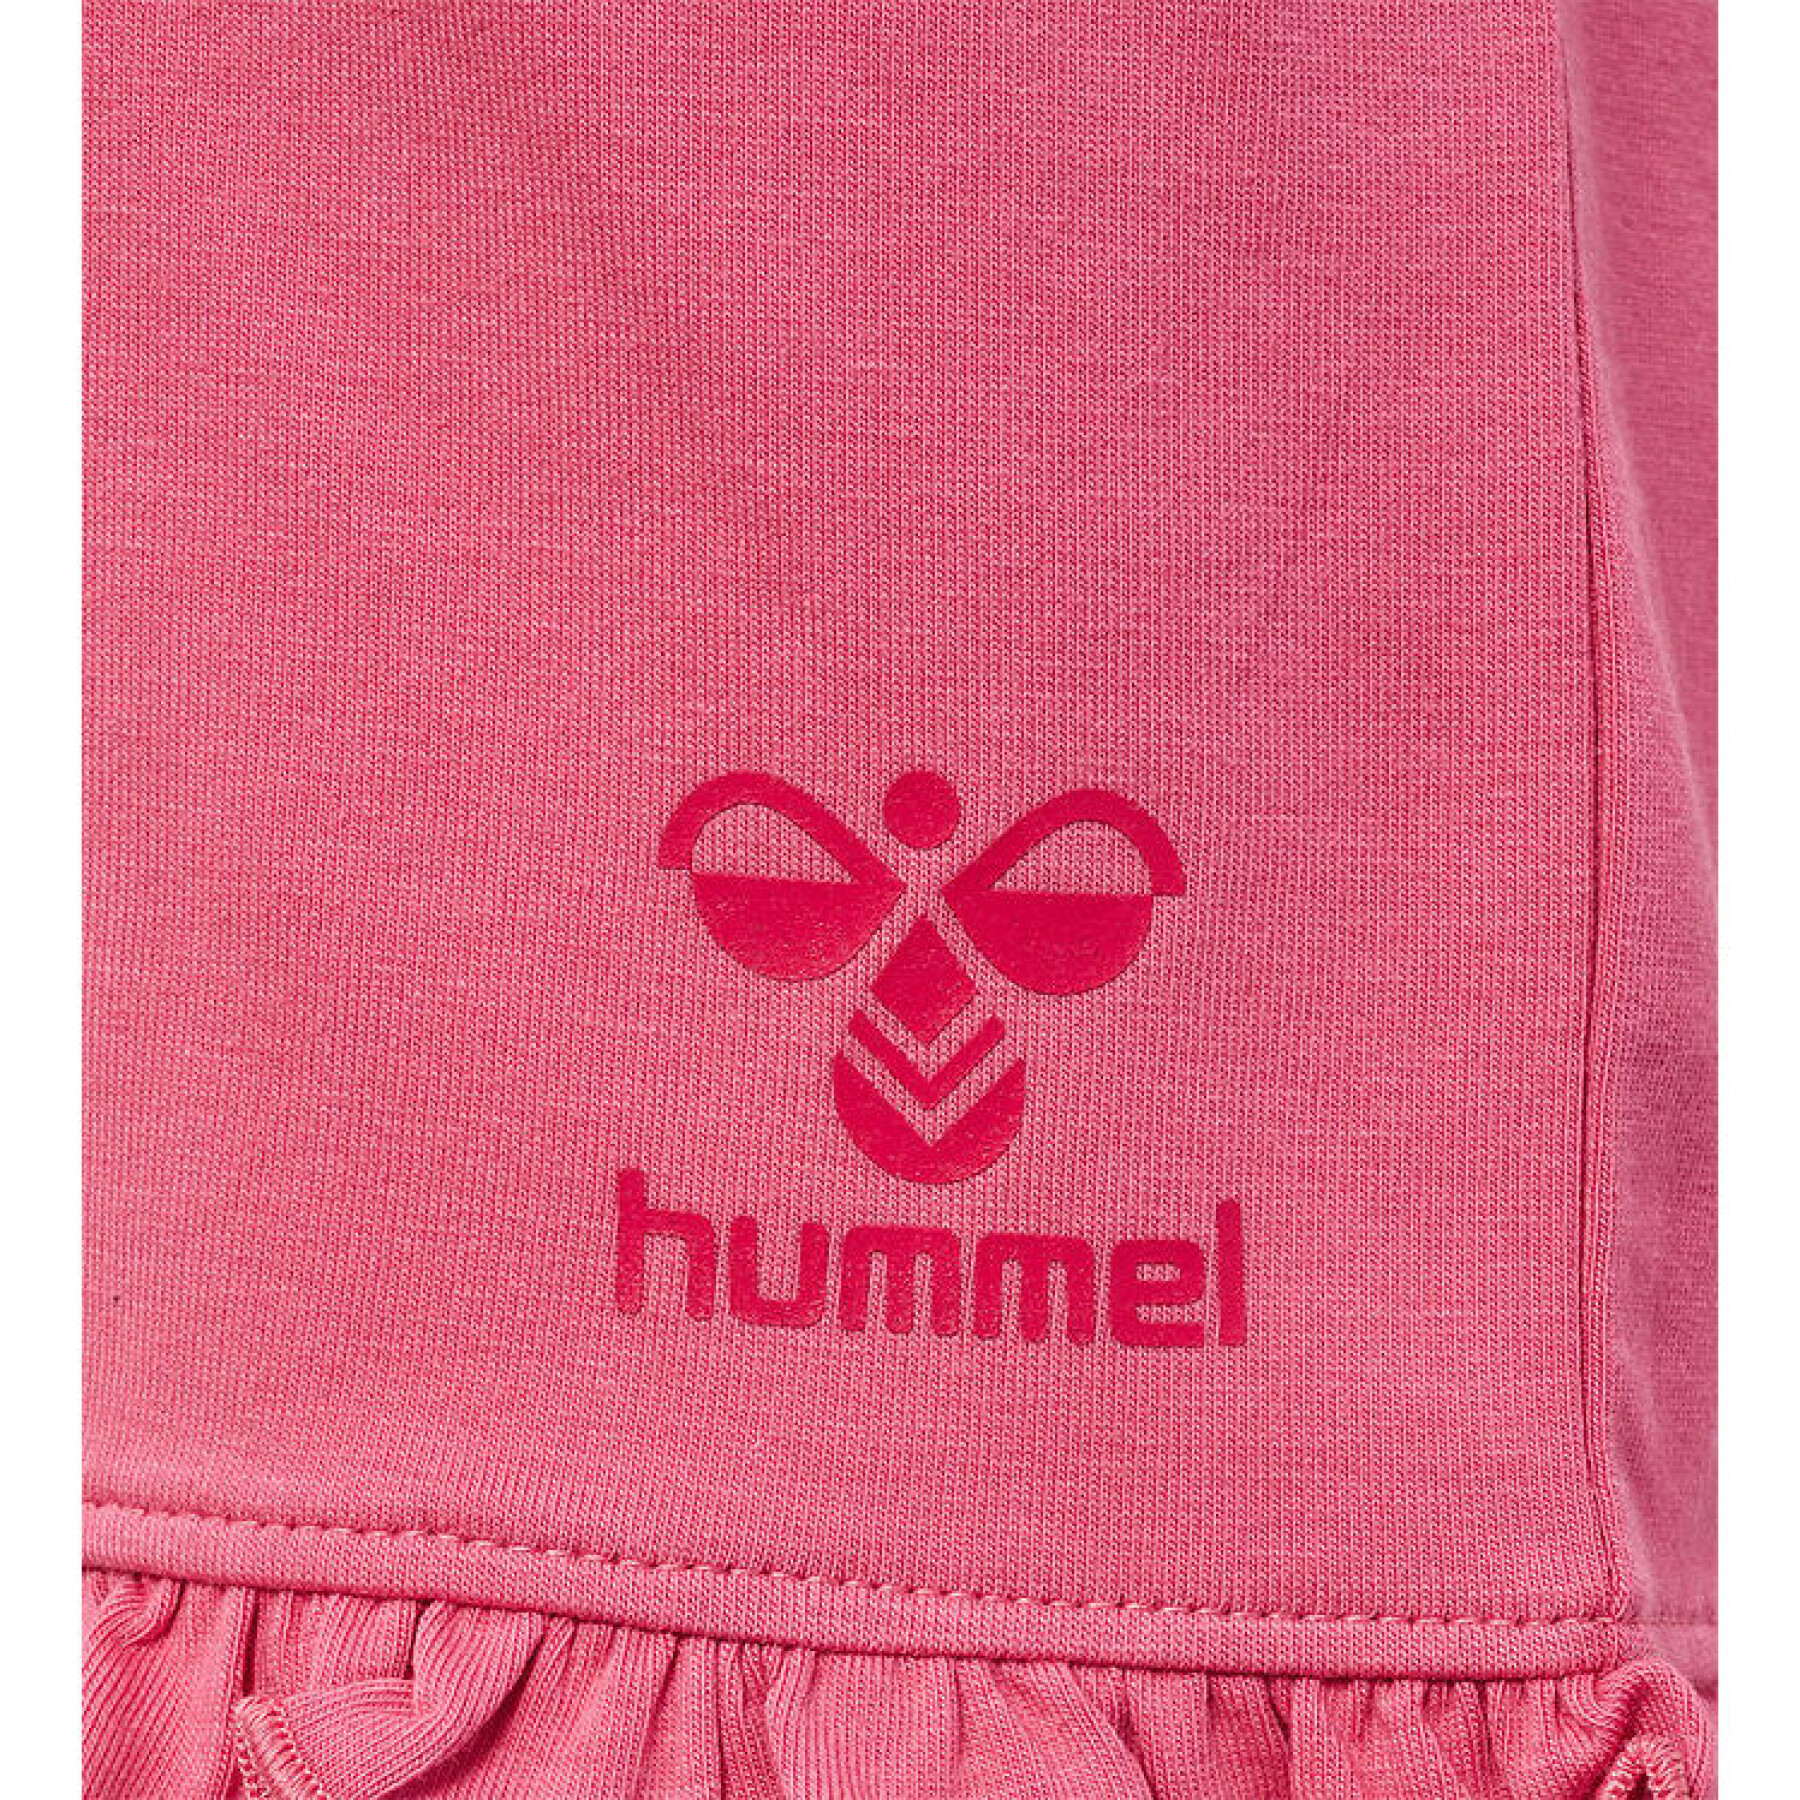 Meisjes shorts Hummel Ulla